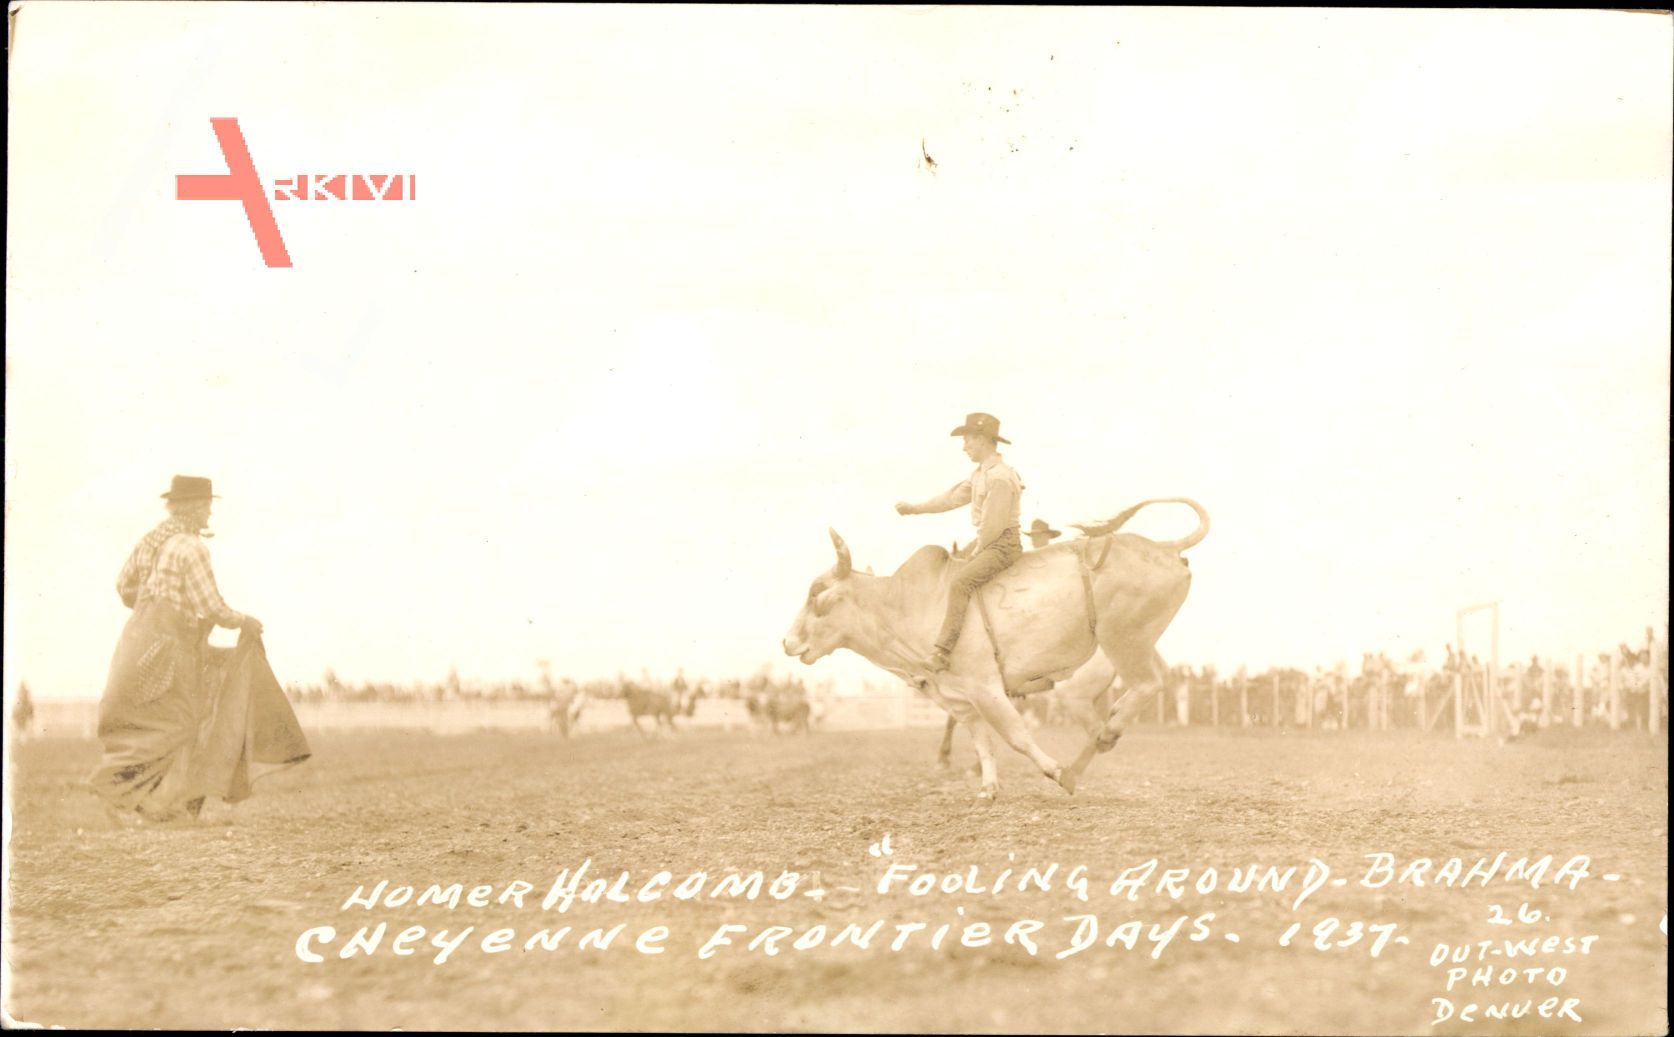 Cheyenne USA, Frontier Days, Homer Halcomo, Fooling around Brahma,Cowboy